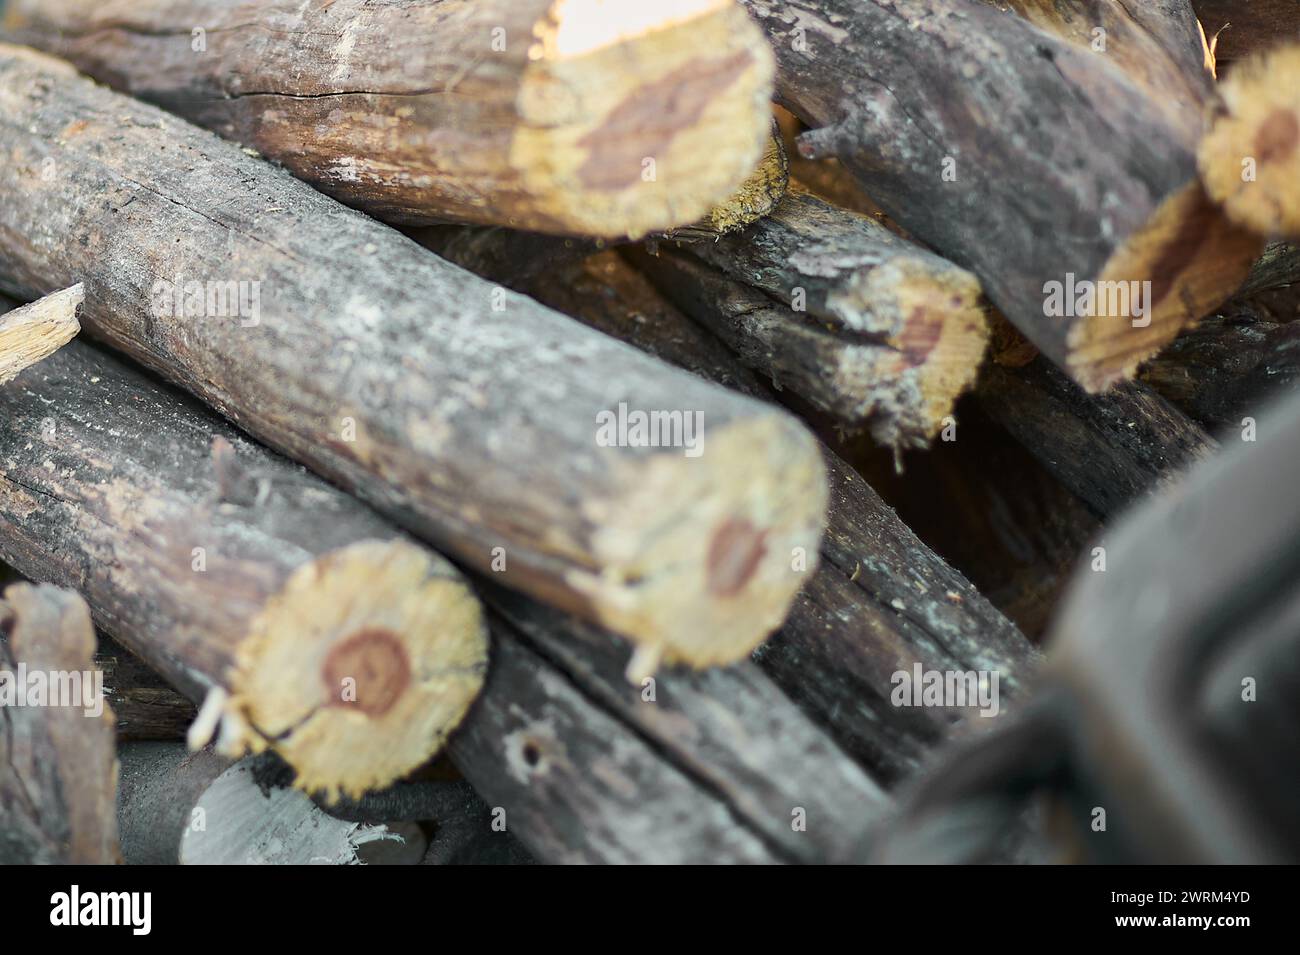 Tagliare i tronchi di legno impilati, mostrando anelli di crescita e la consistenza ruvida della corteccia. Foto Stock